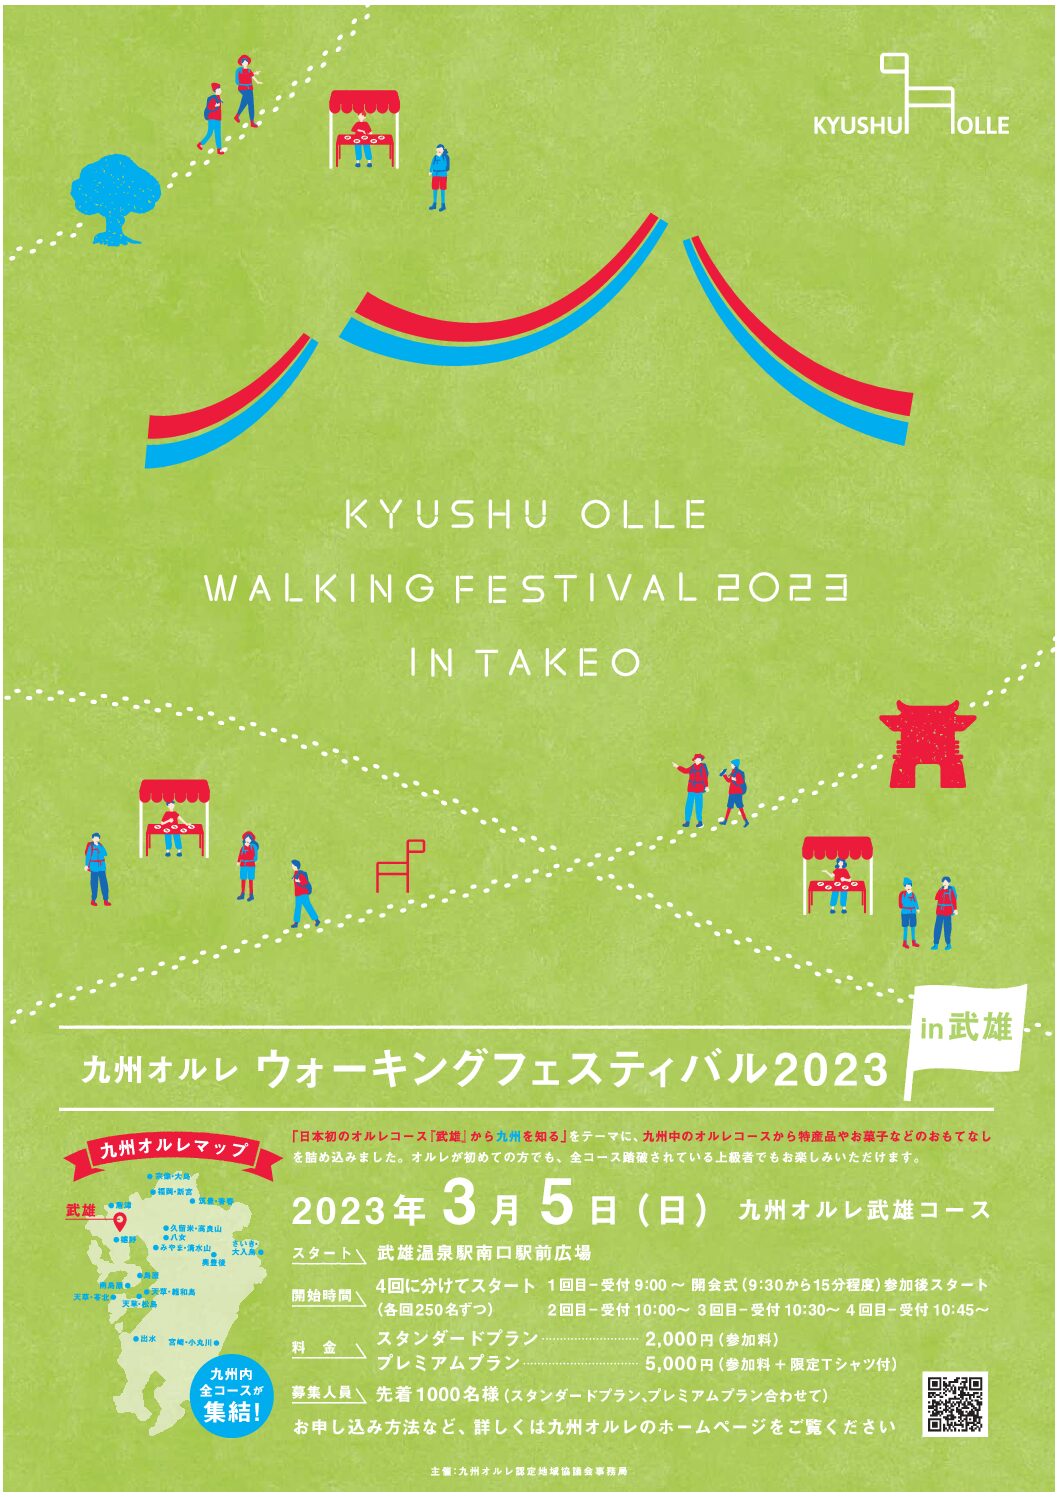 【九州オルレウォーキングフェスティバル2023 in 武雄】受付開始♪